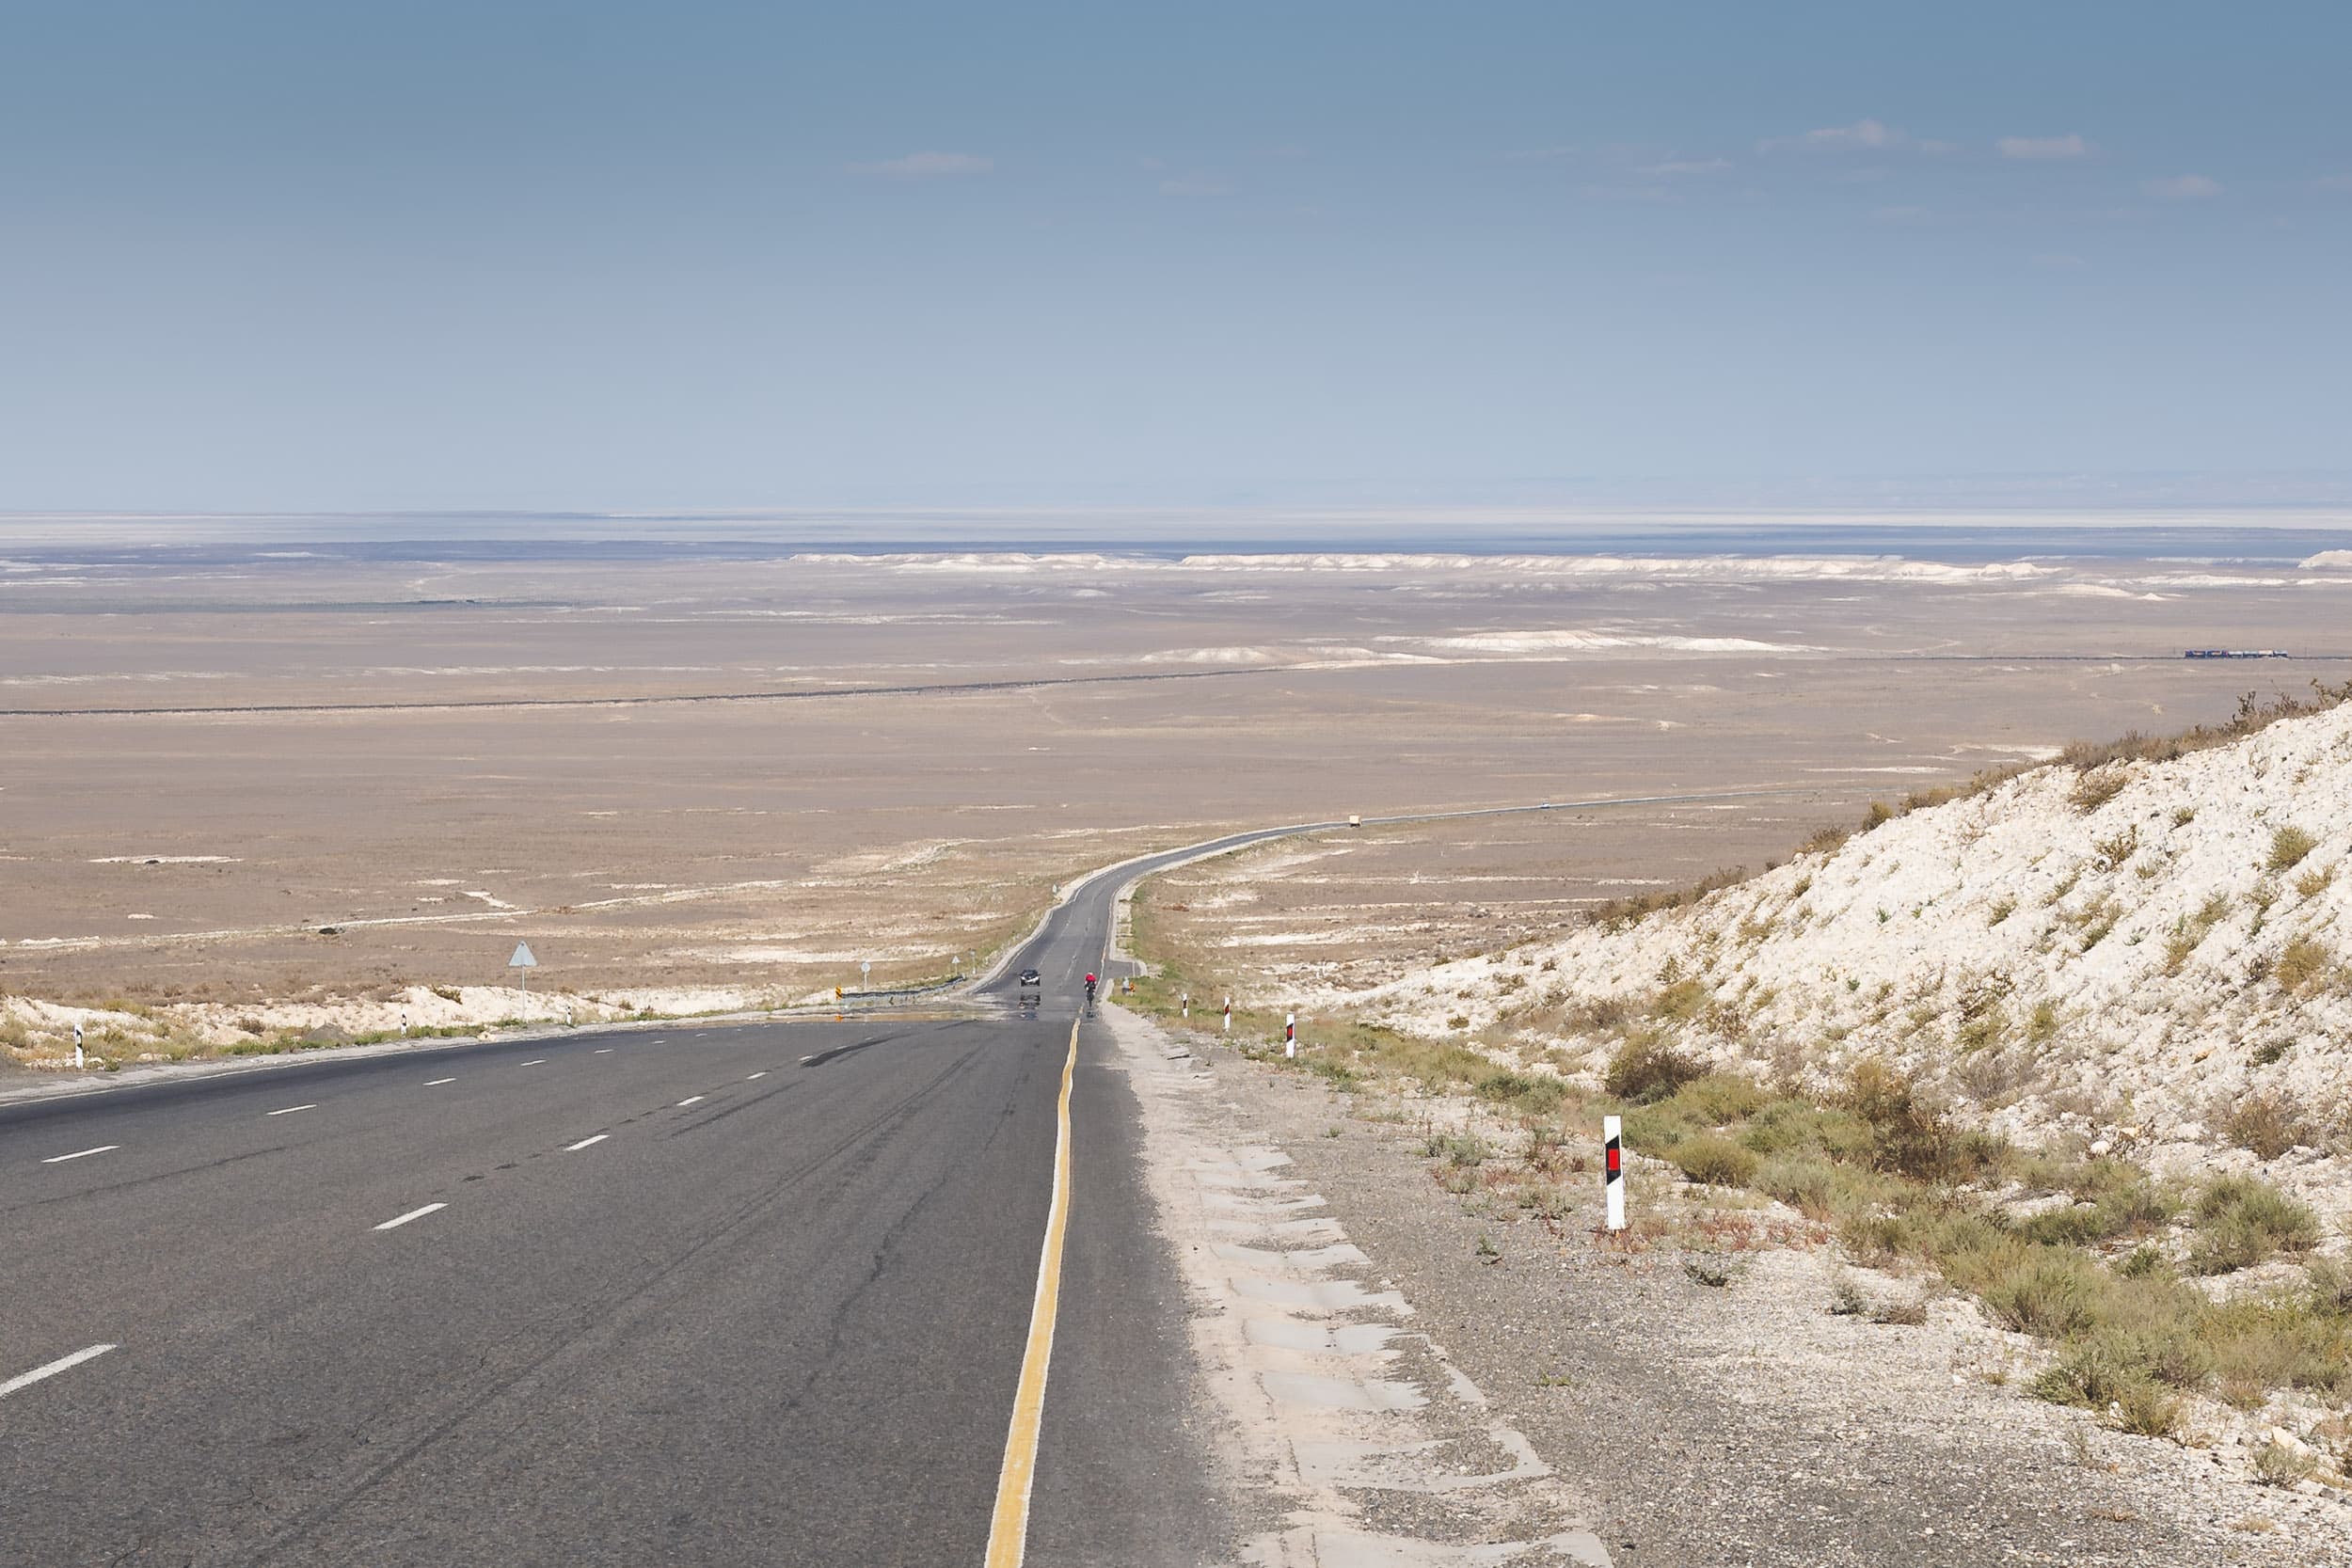 Kazakhstan desert crossing